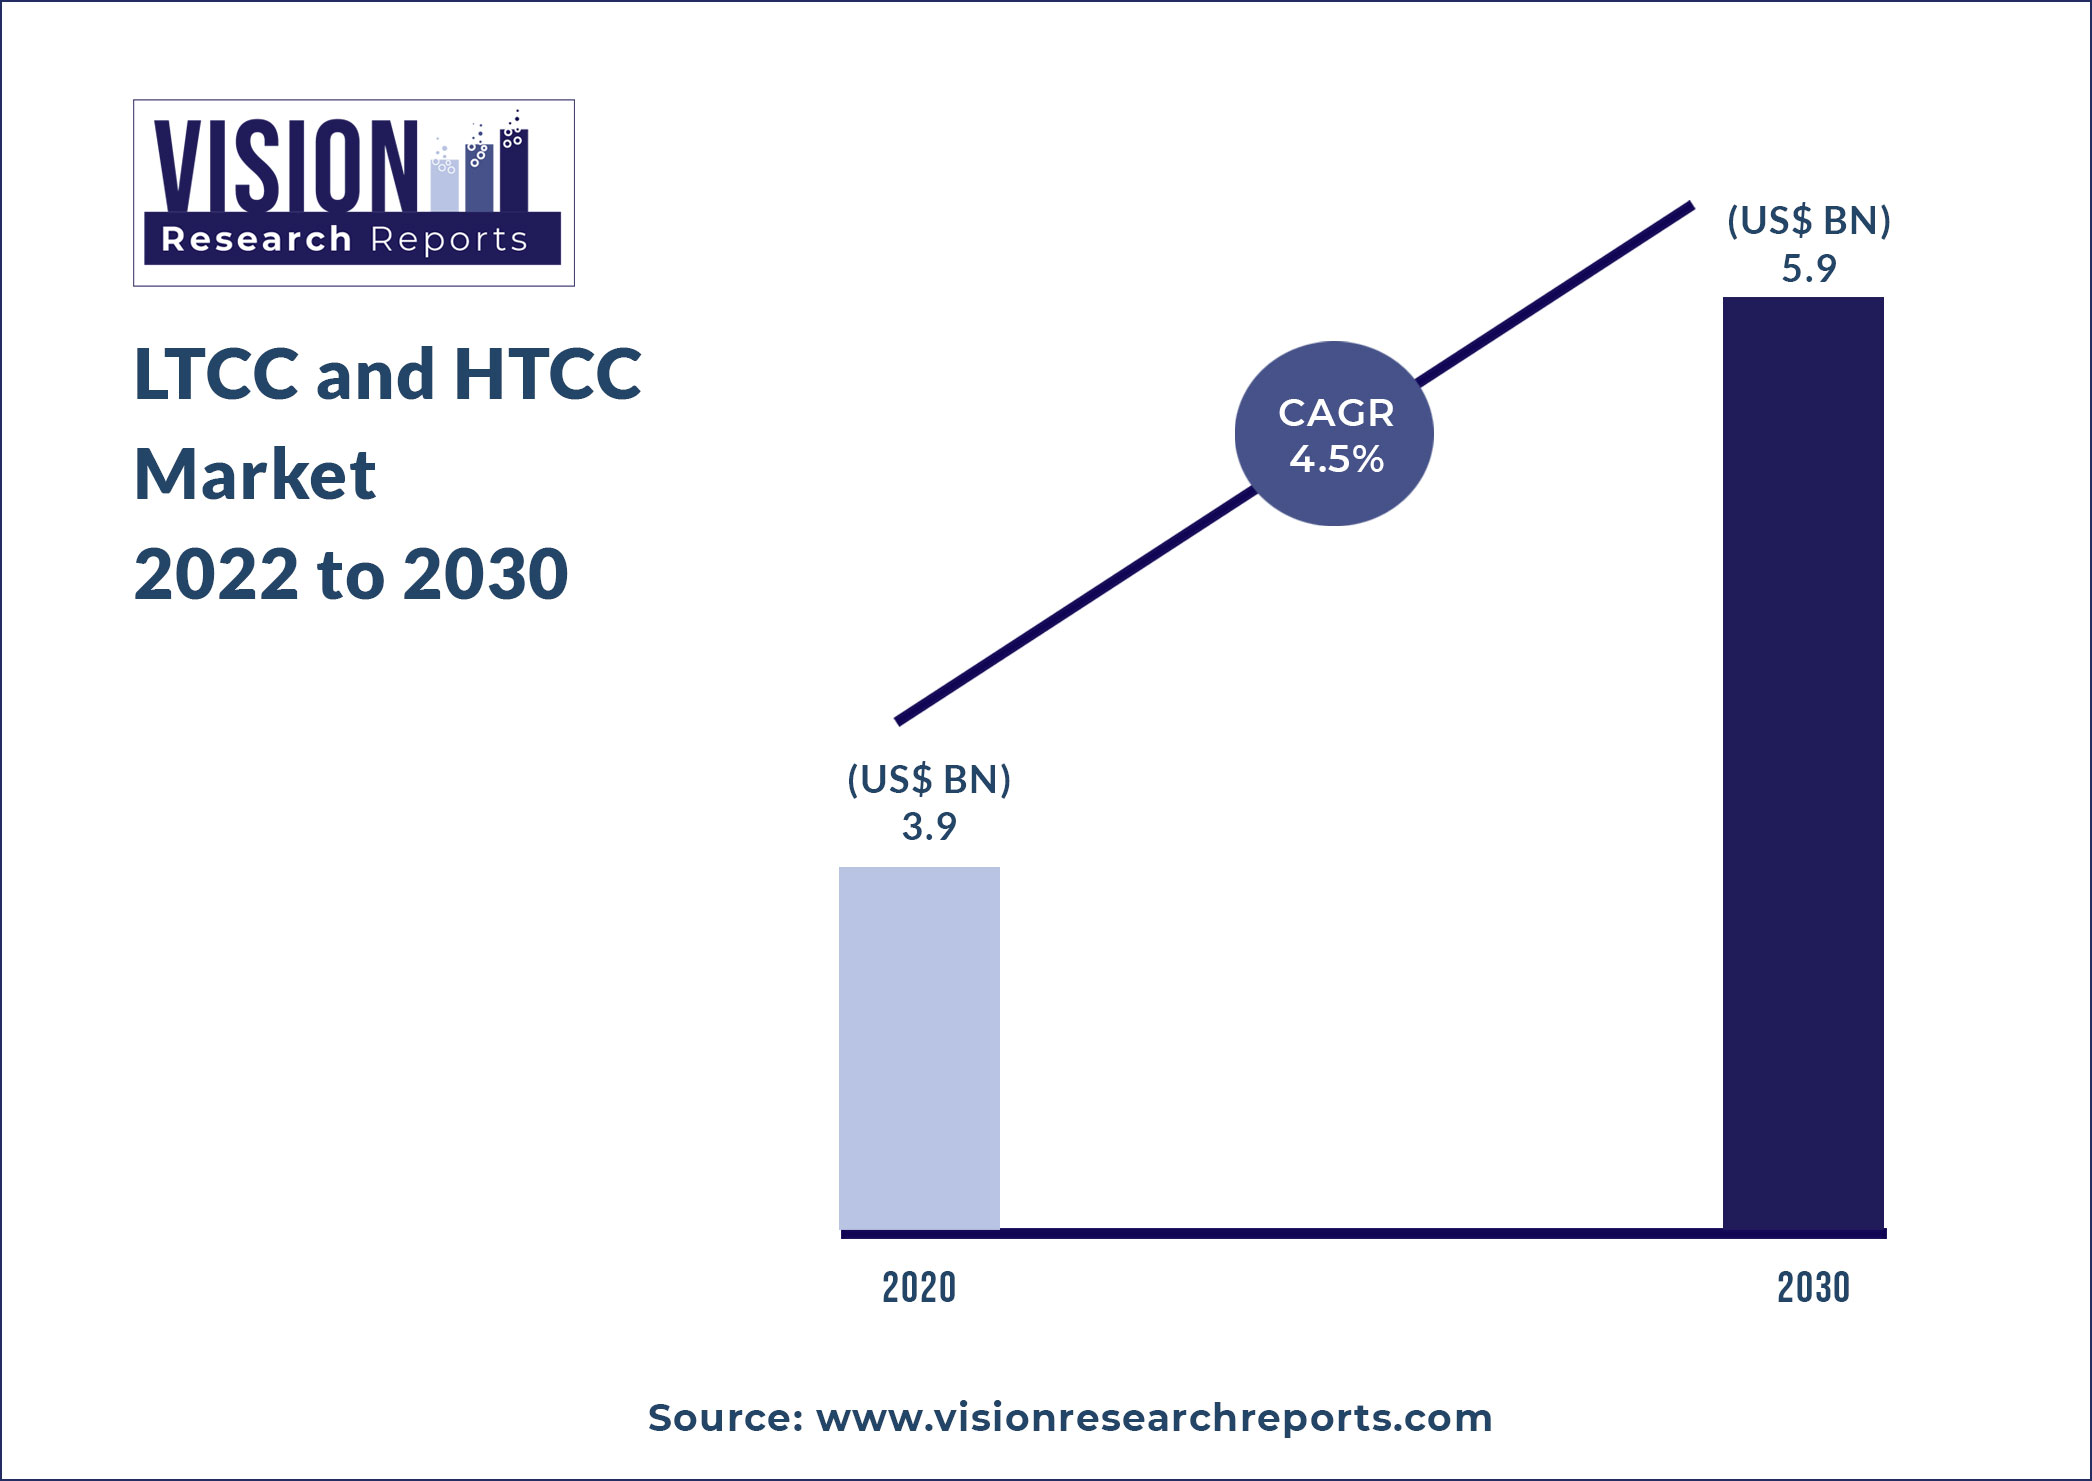 LTCC and HTCC Market Size 2022 to 2030